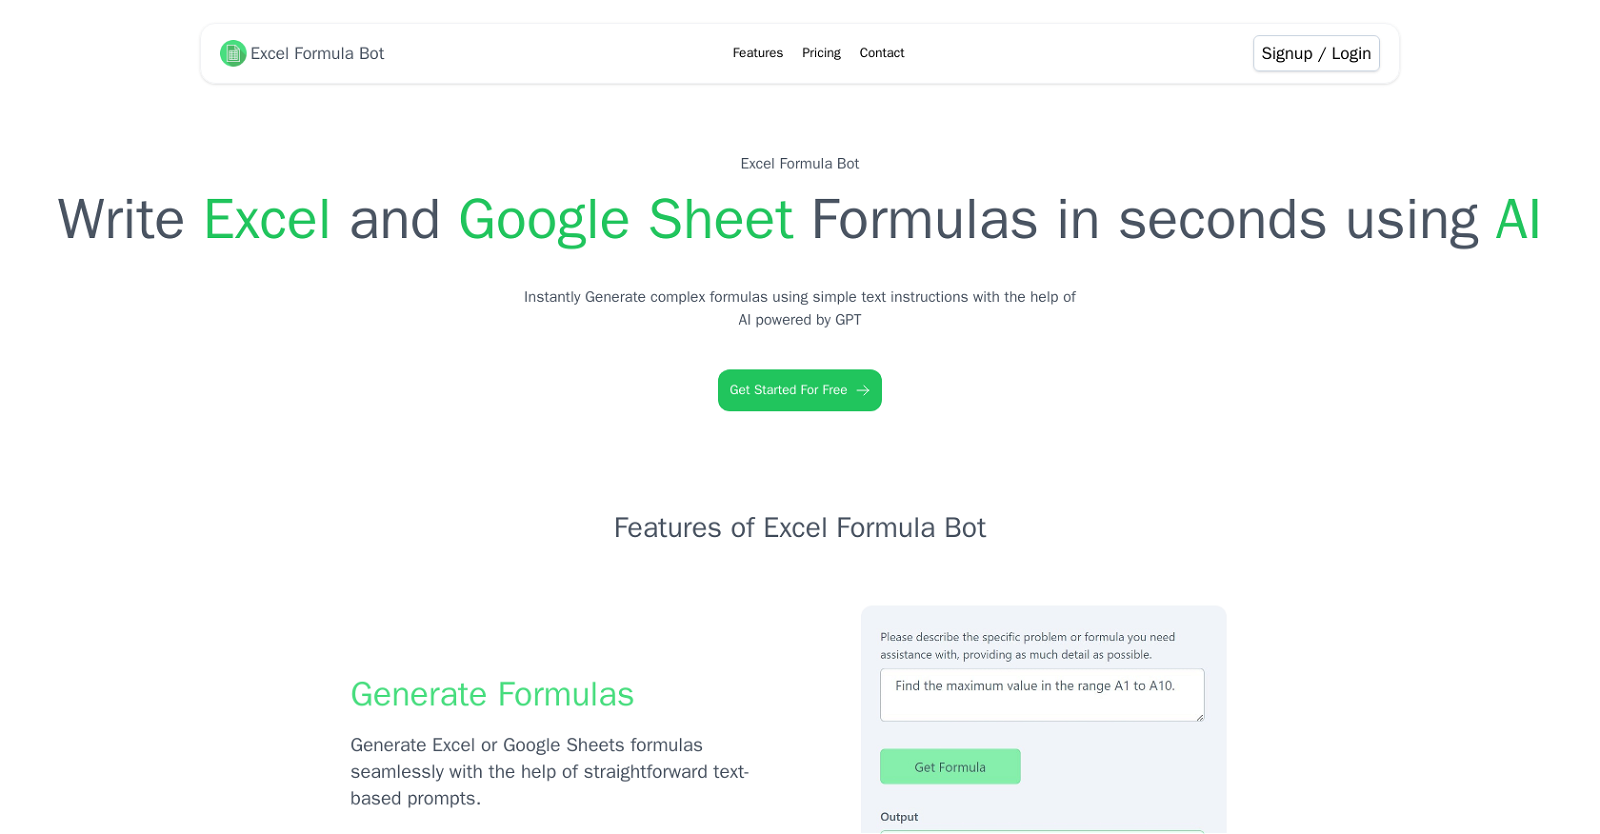 Excel Formul Bot website